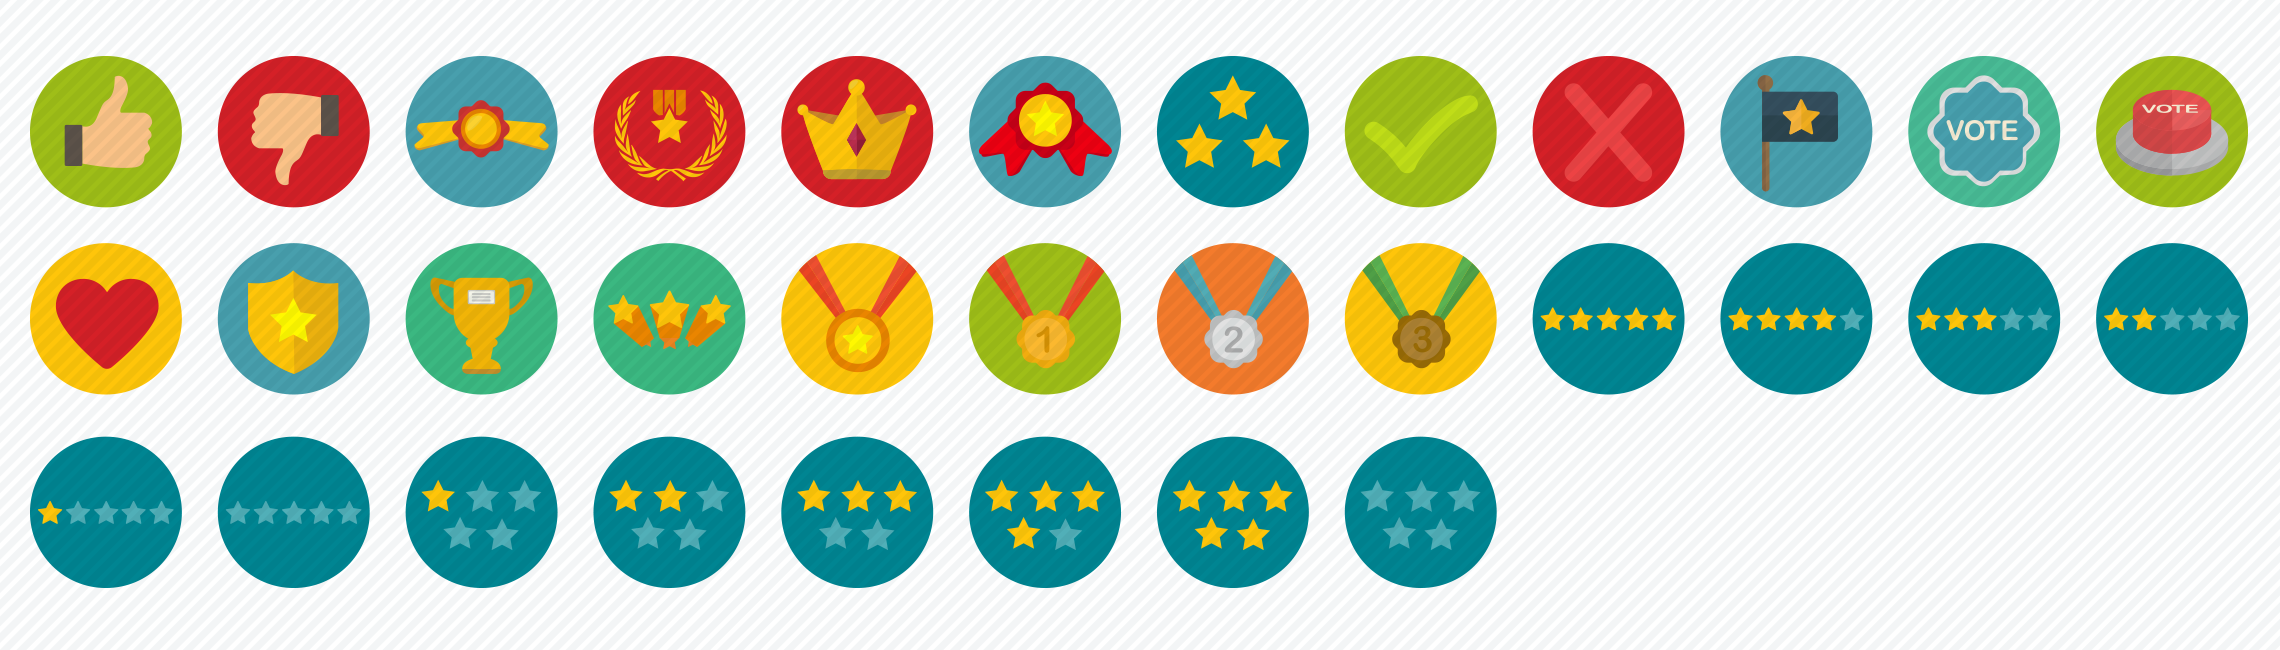 badges-rewards-flat-icons-set